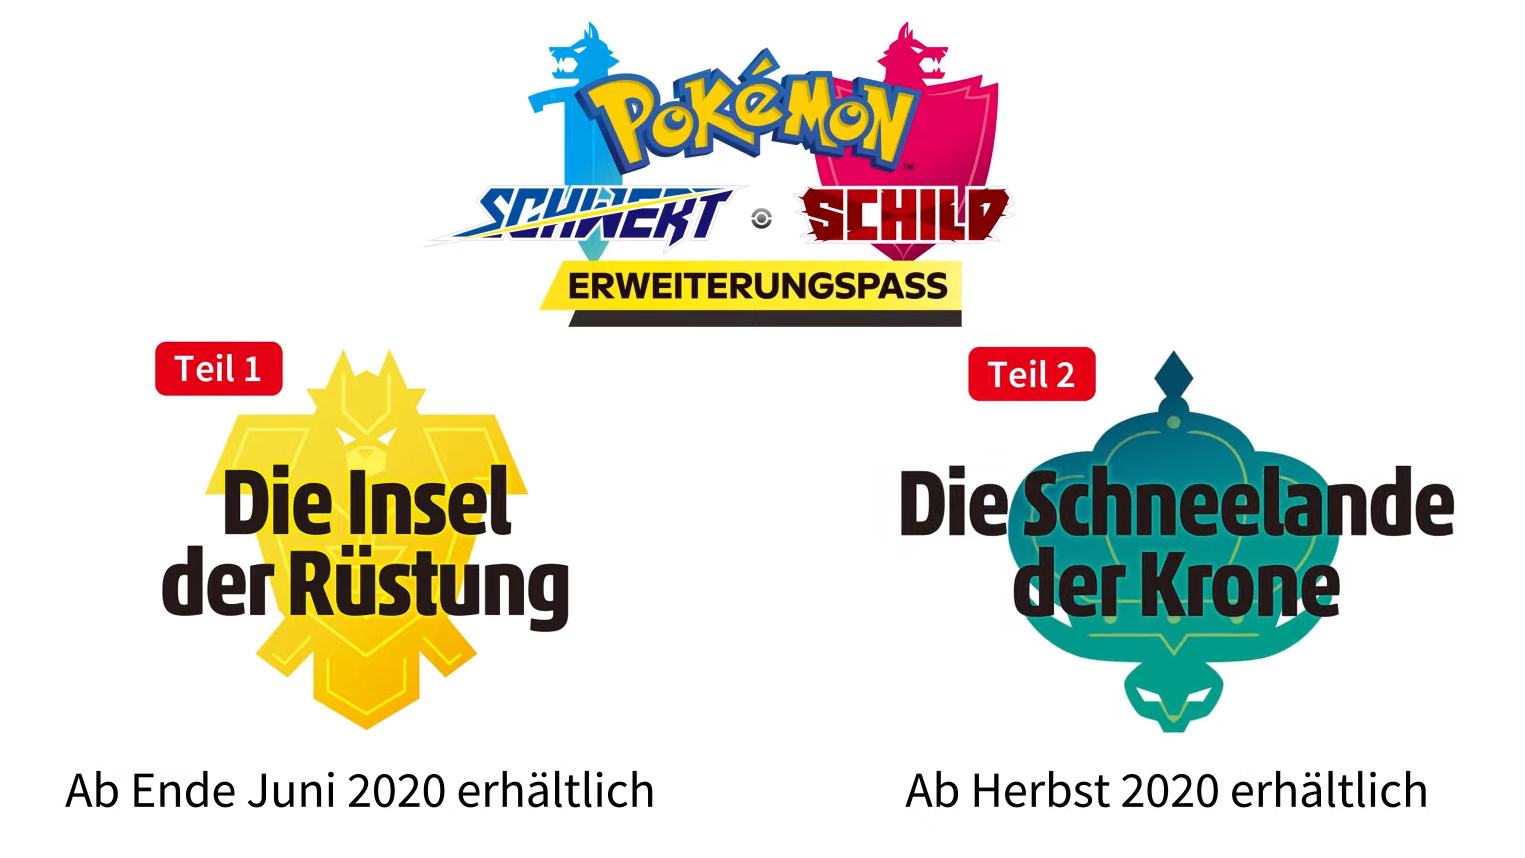 2020 Schild Pokémon - erhält & Schwert zwei News Erweiterungen